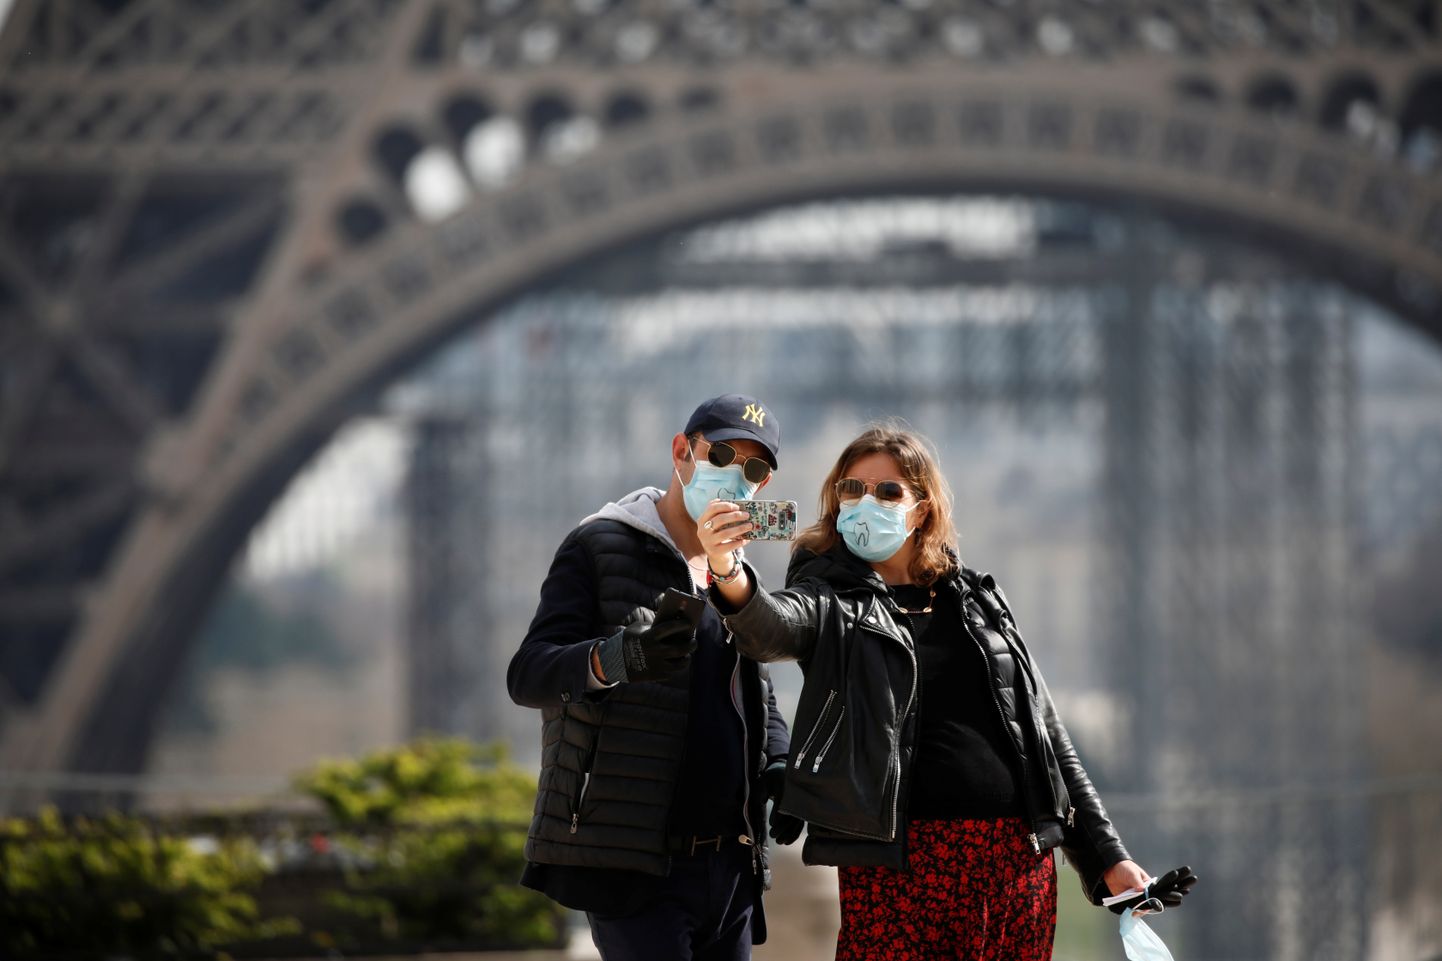 Romantiline maskides kohting Pariisis? Võib ka nii.